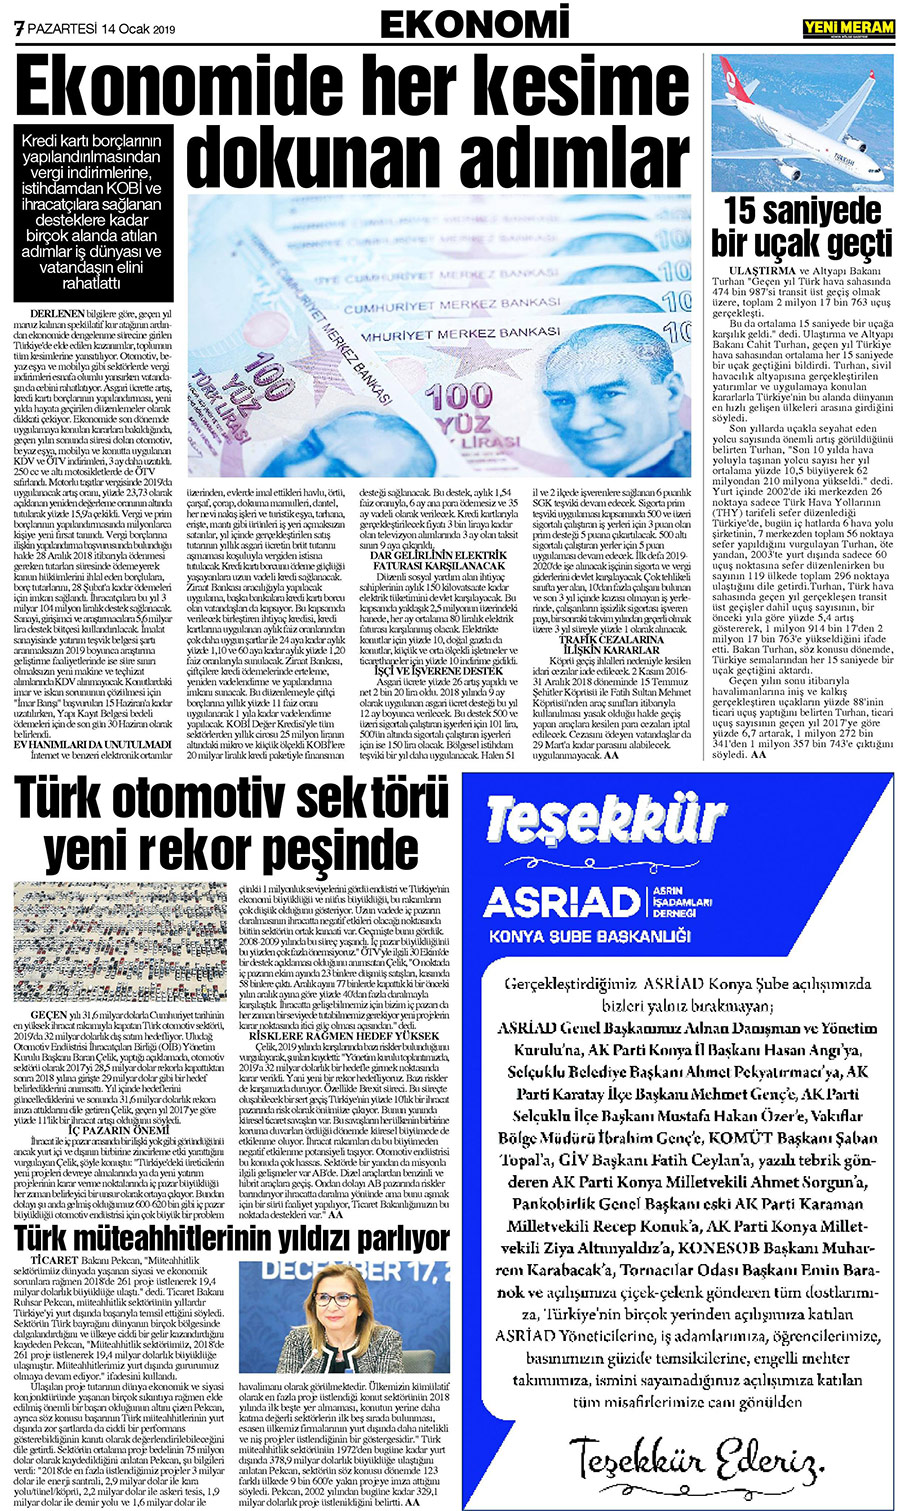 14 Ocak 2019 Yeni Meram Gazetesi